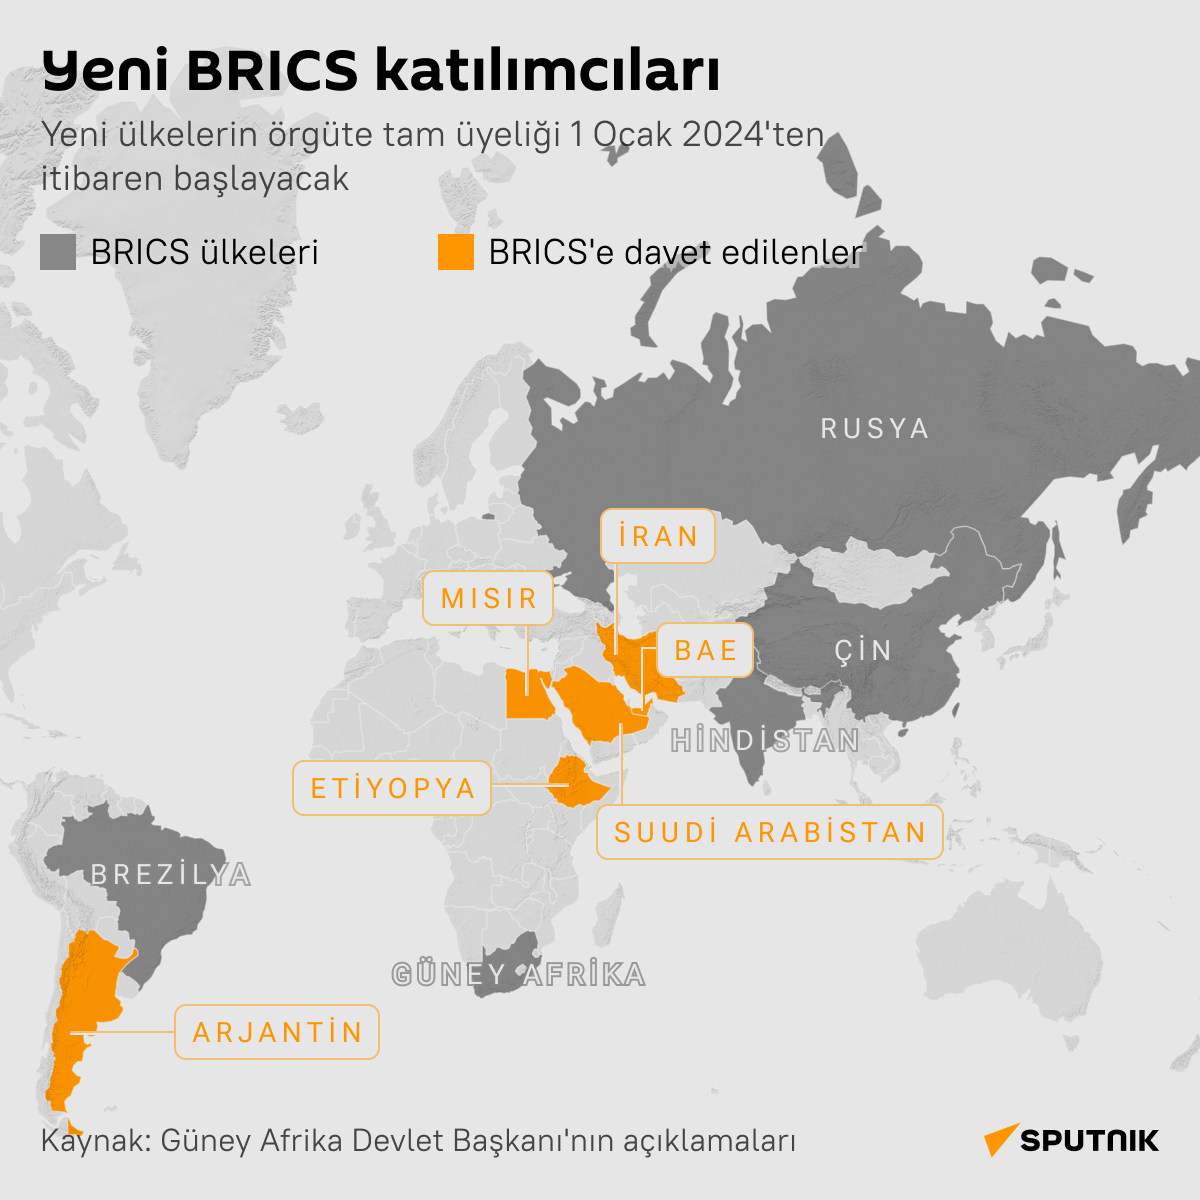 Yeni BRICS katılımcıları infografik - Sputnik Türkiye